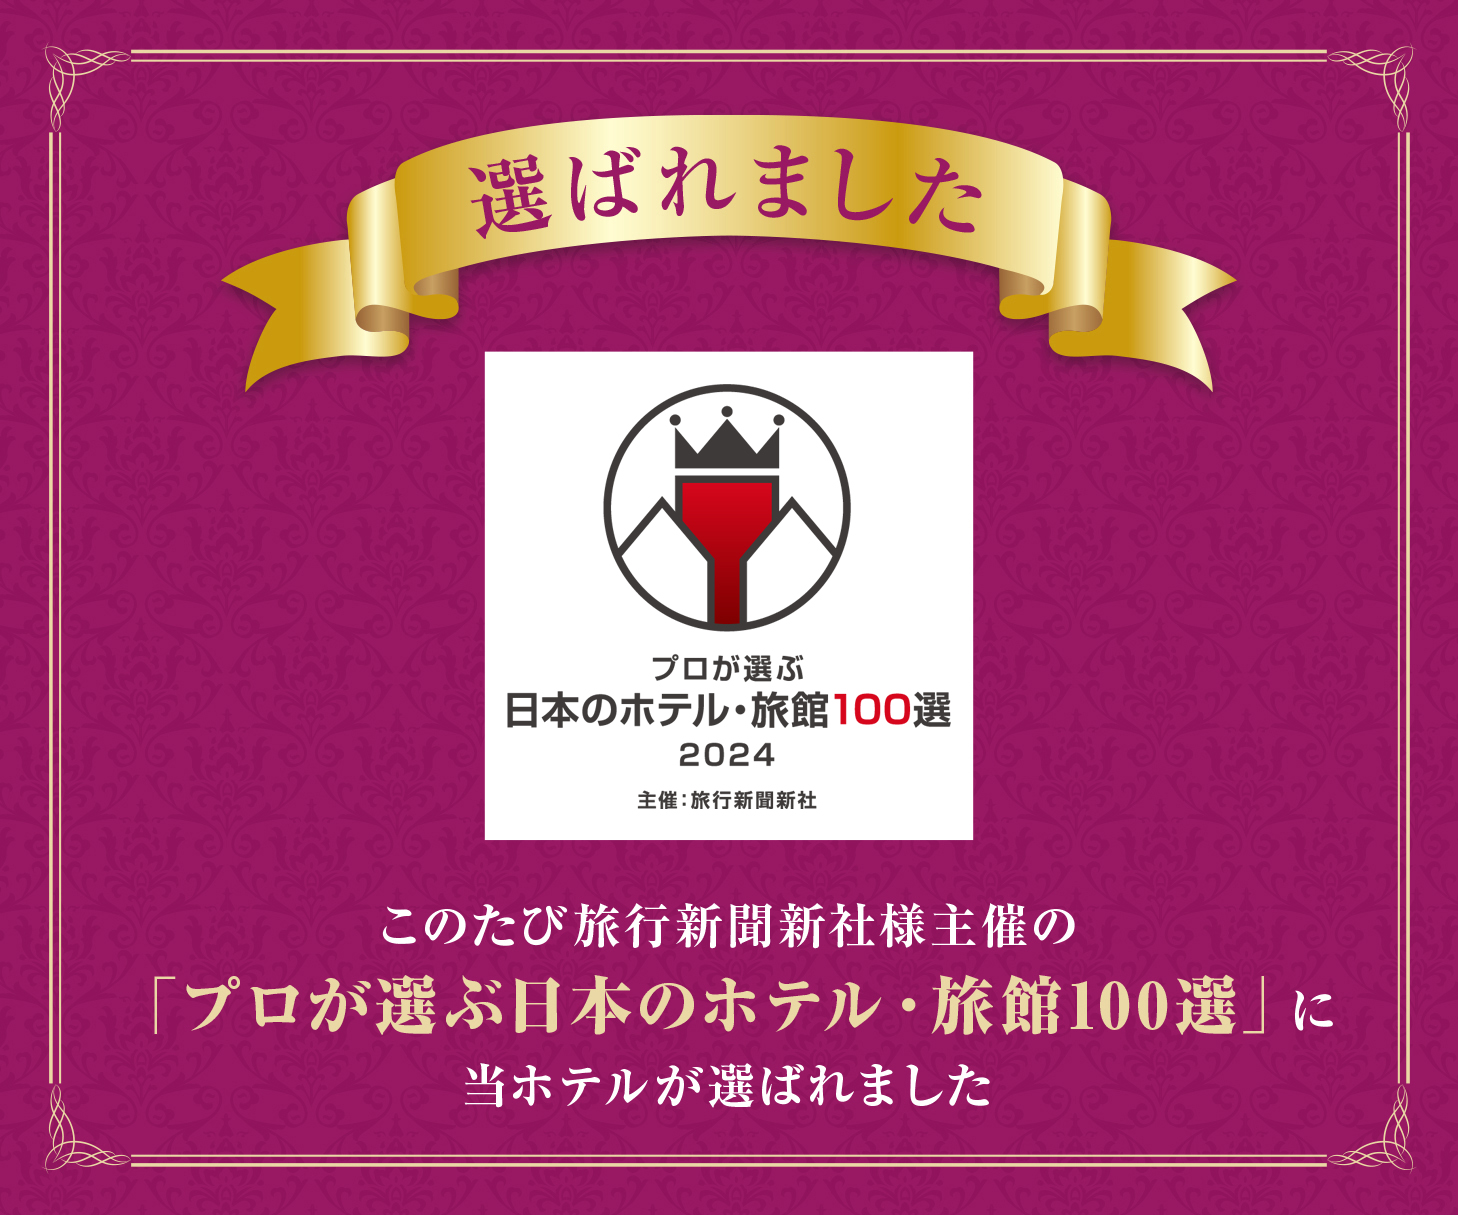 プロが選ぶ日本のホテル・旅館100選に選ばれました